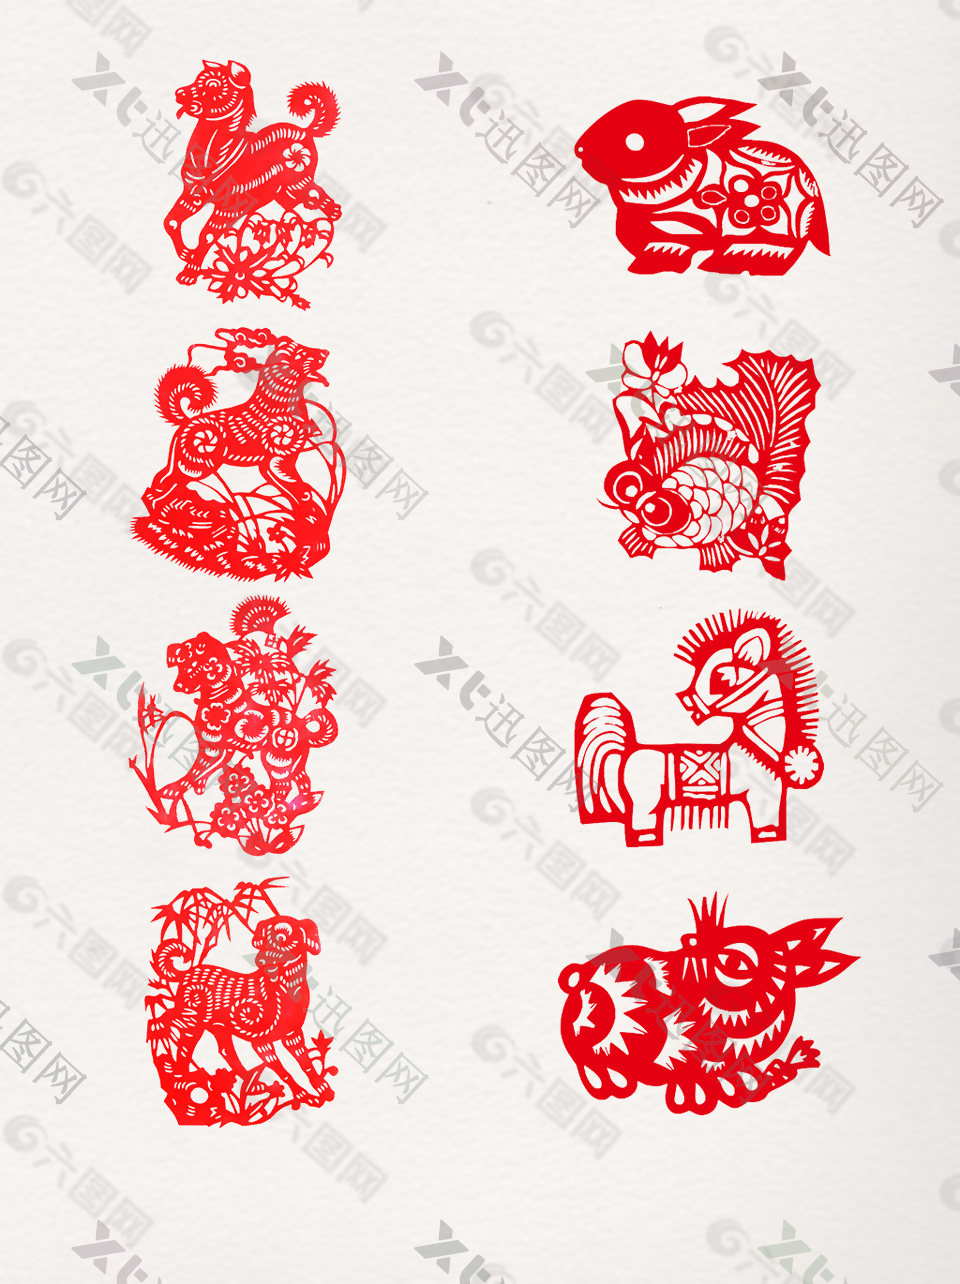 中国传统中国红动物剪纸素材